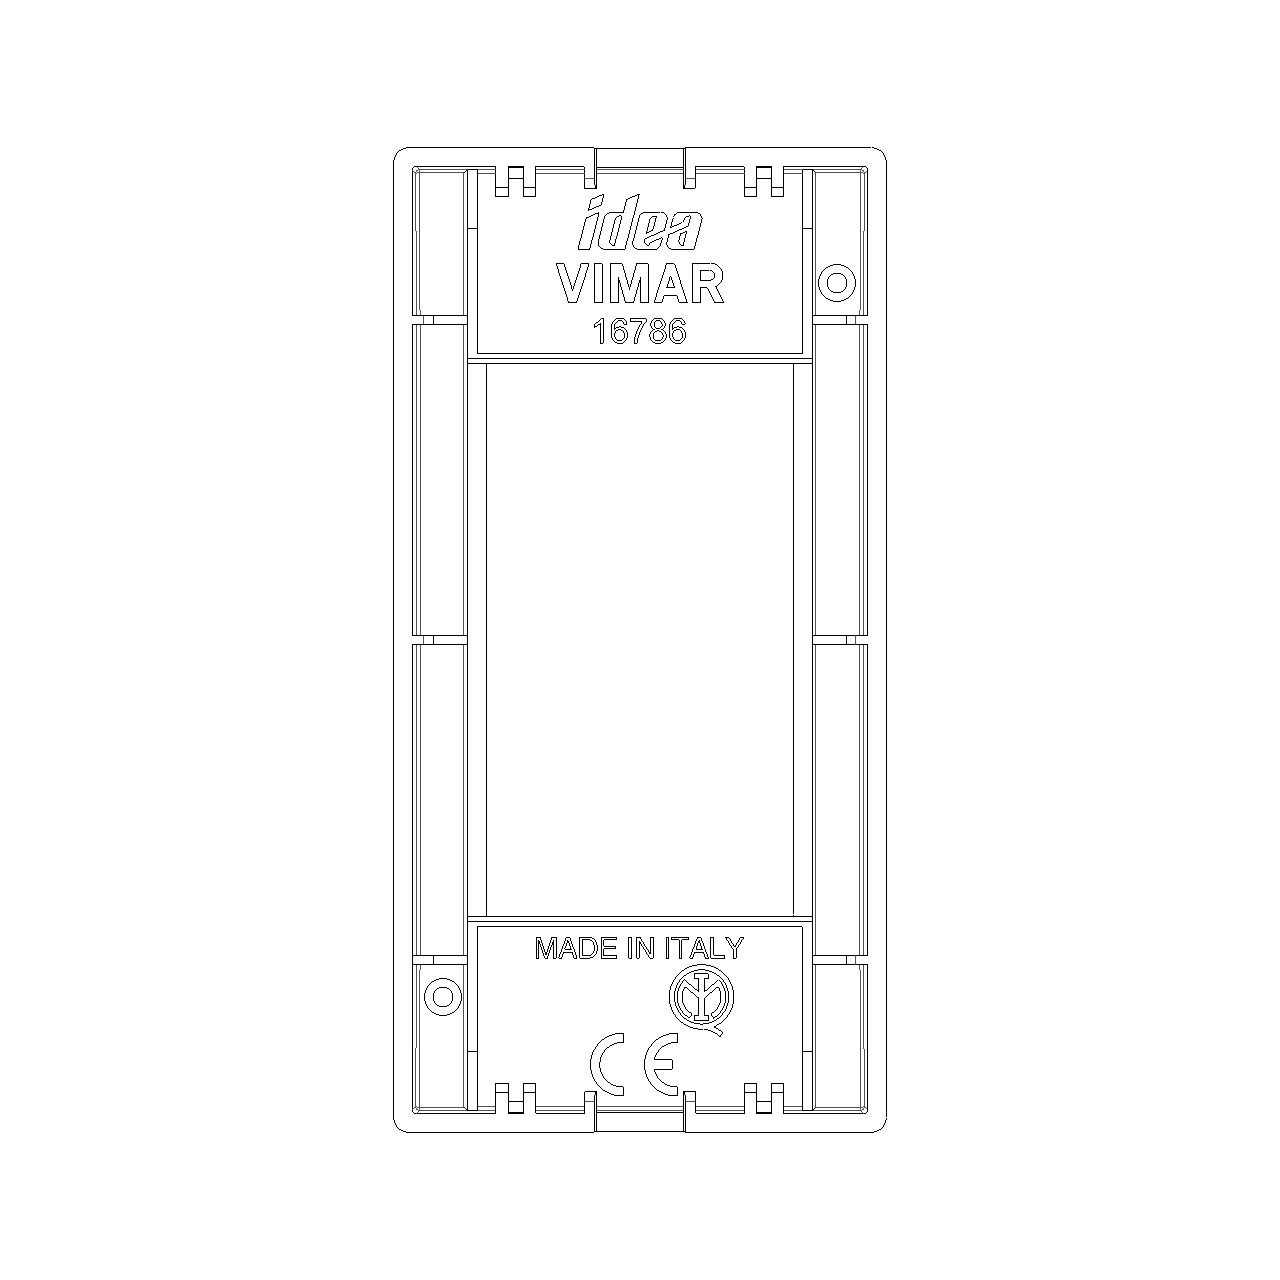 Vimar - Idea 16786 Classica Cover Plate - 1 Module, Technopolymer, Plastic - Apollo Lighting